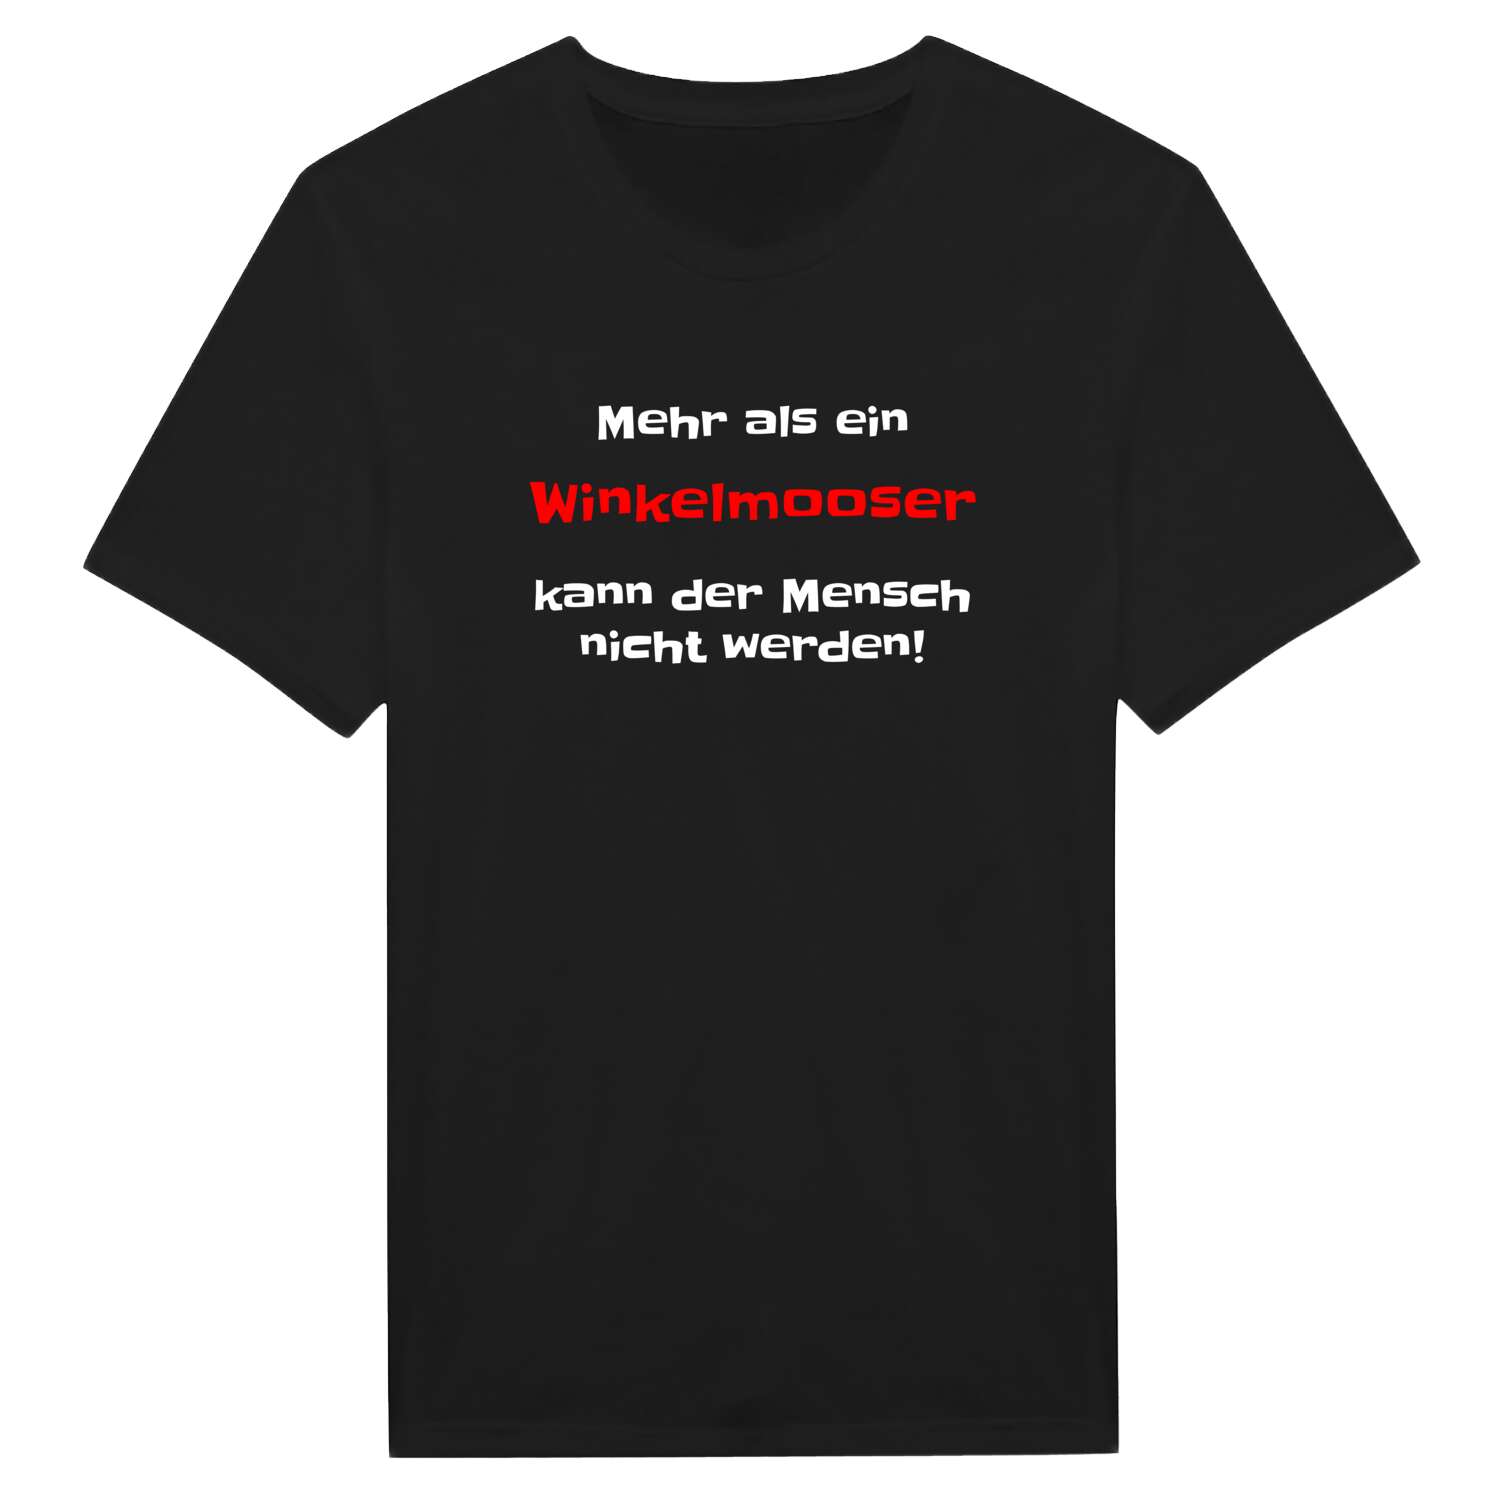 Winkelmoos T-Shirt »Mehr als ein«